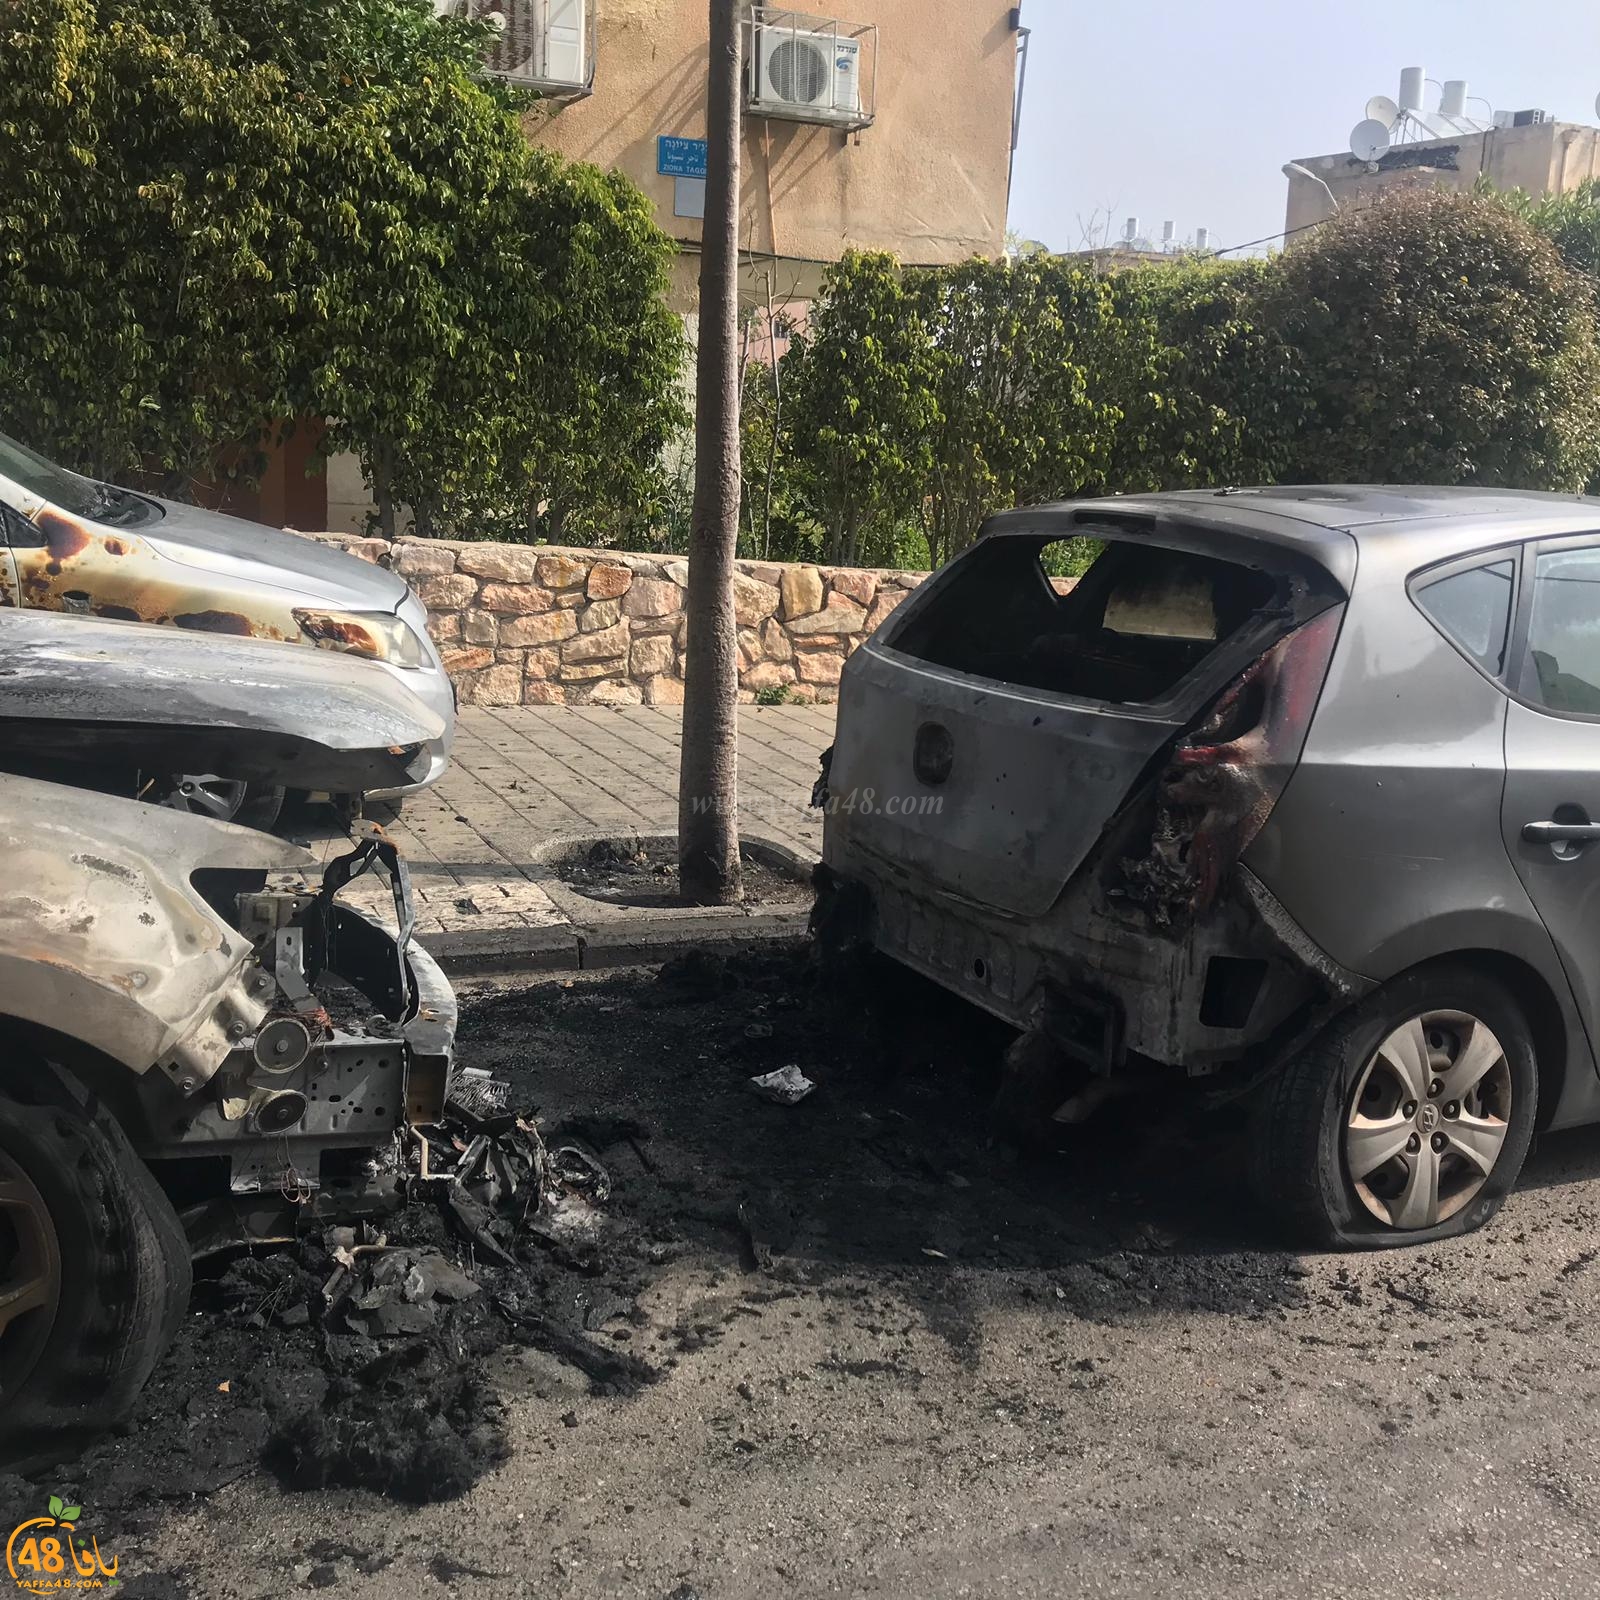  الليلة الماضية: حريق يتسبب بأضرار لـ3 سيارات في يافا 